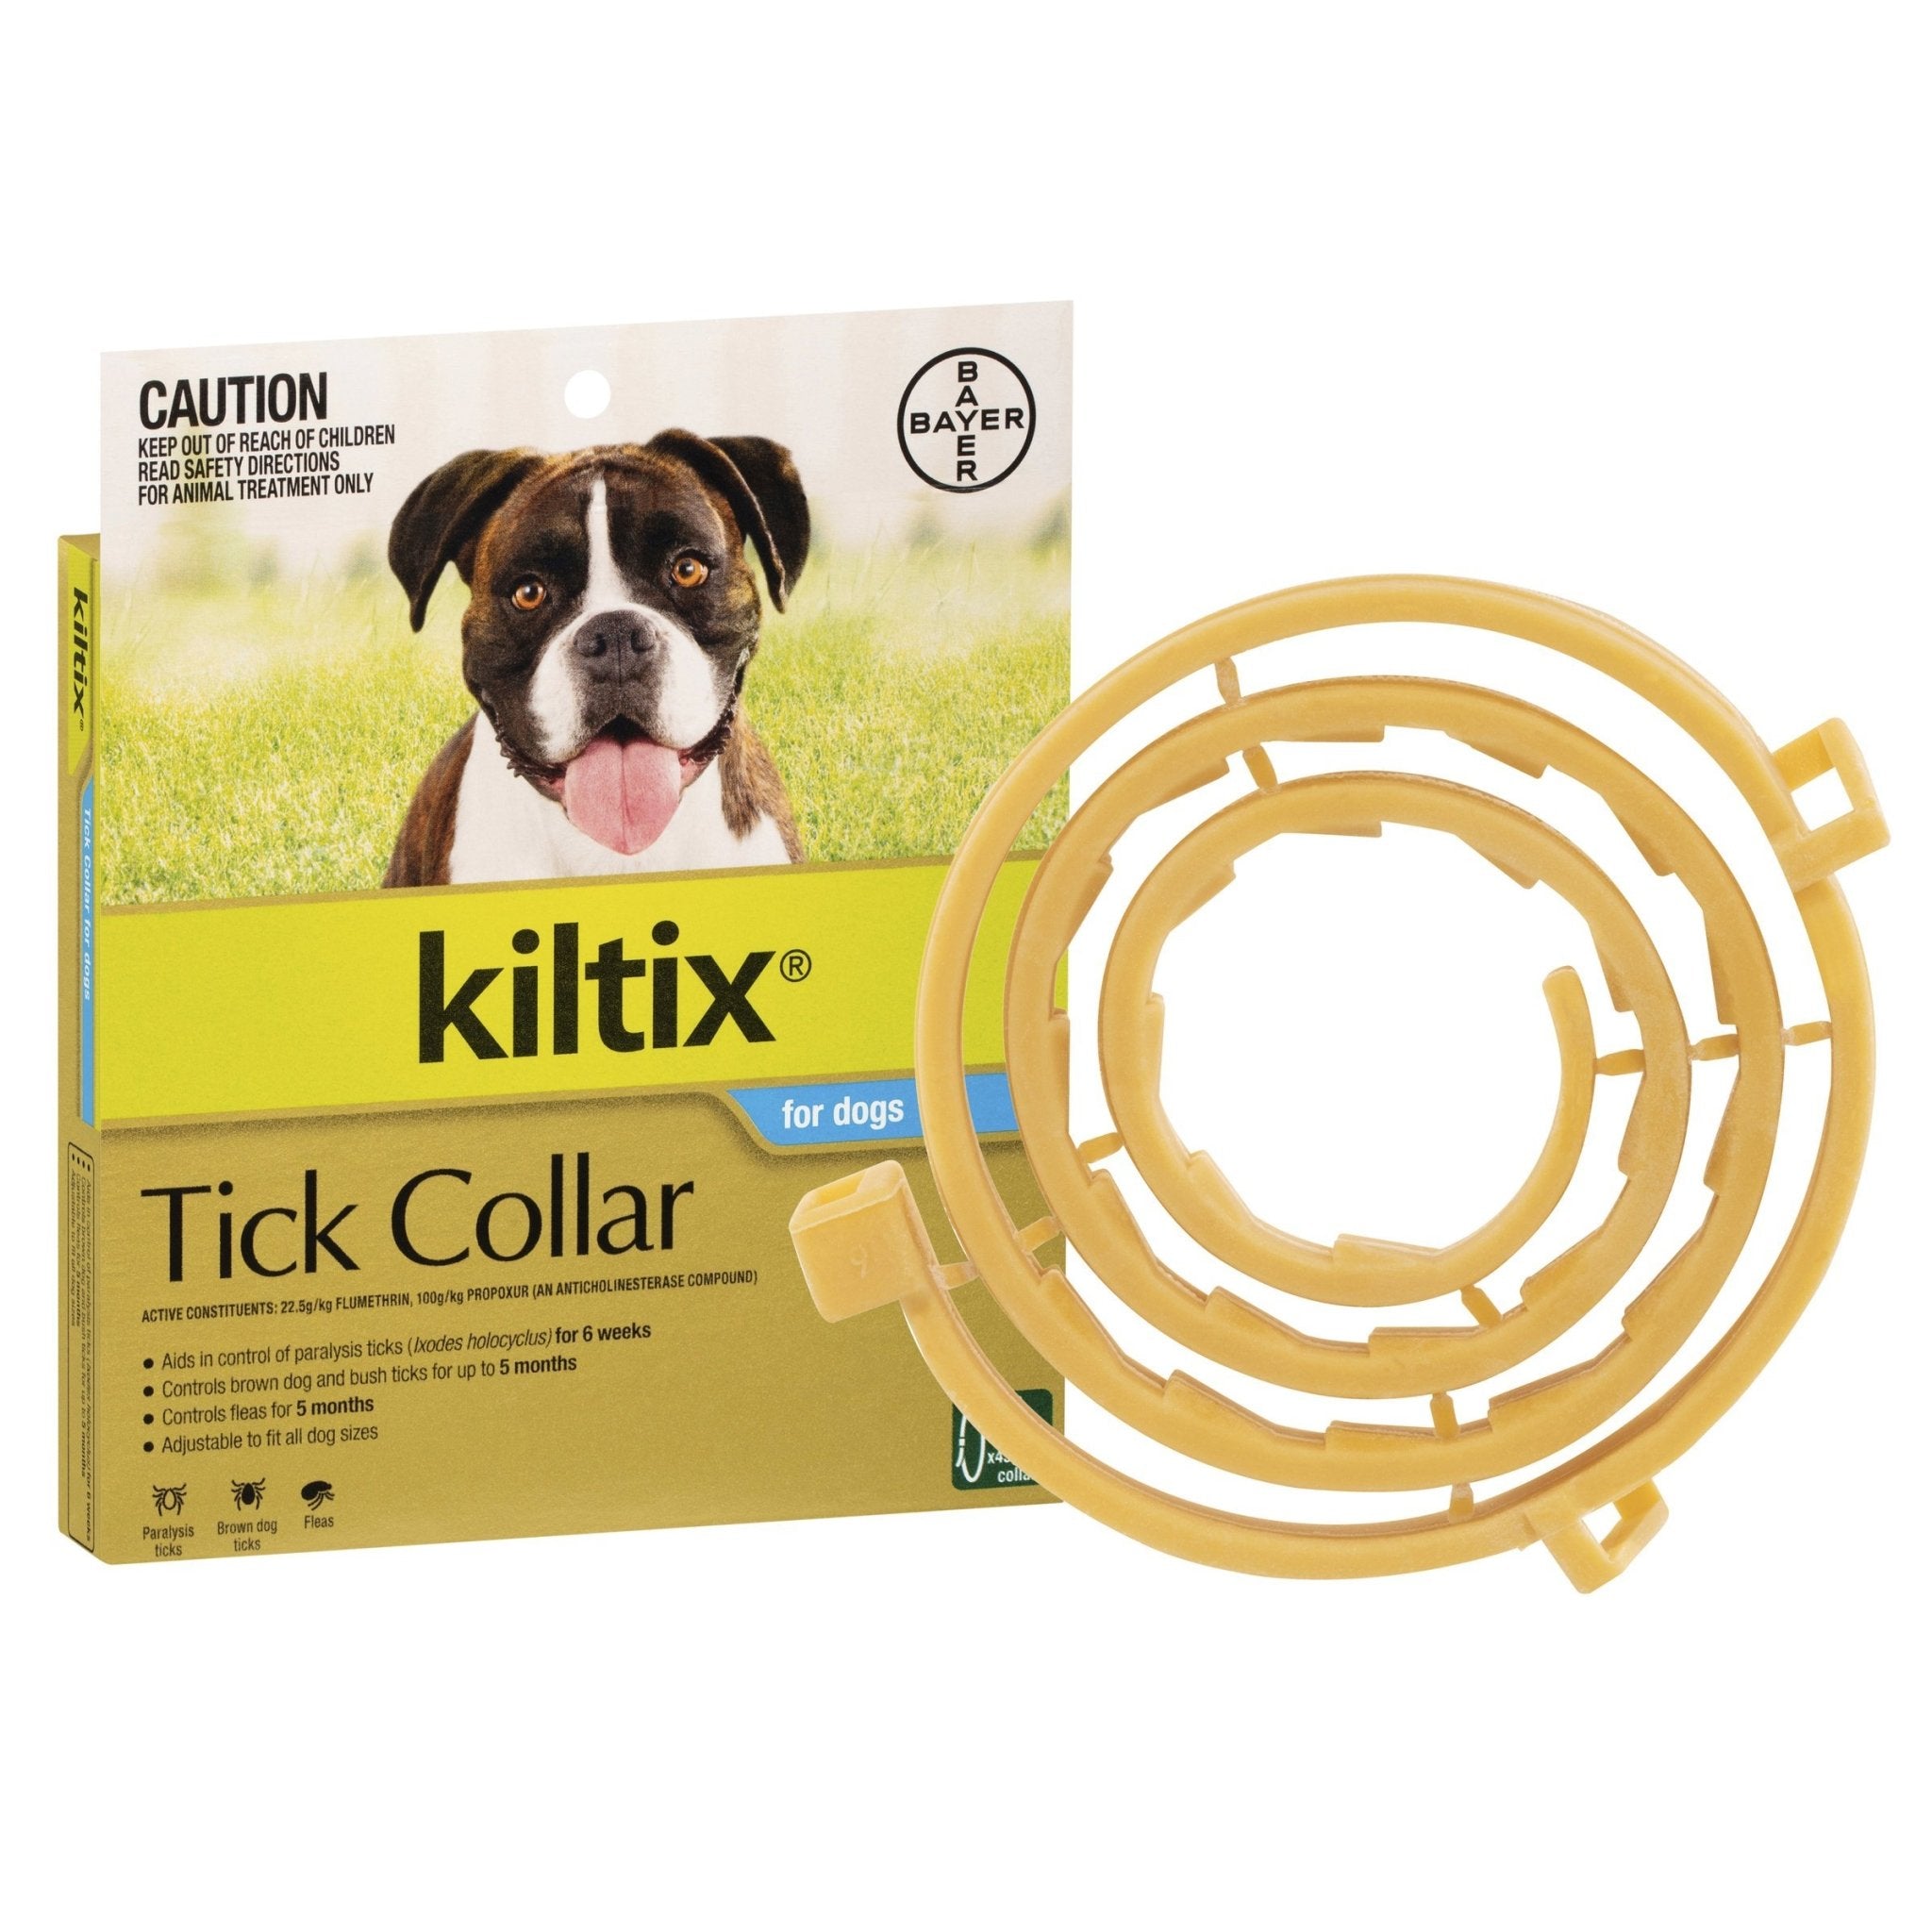 Kiltix Tick Collar For Dogs - 1 Pack